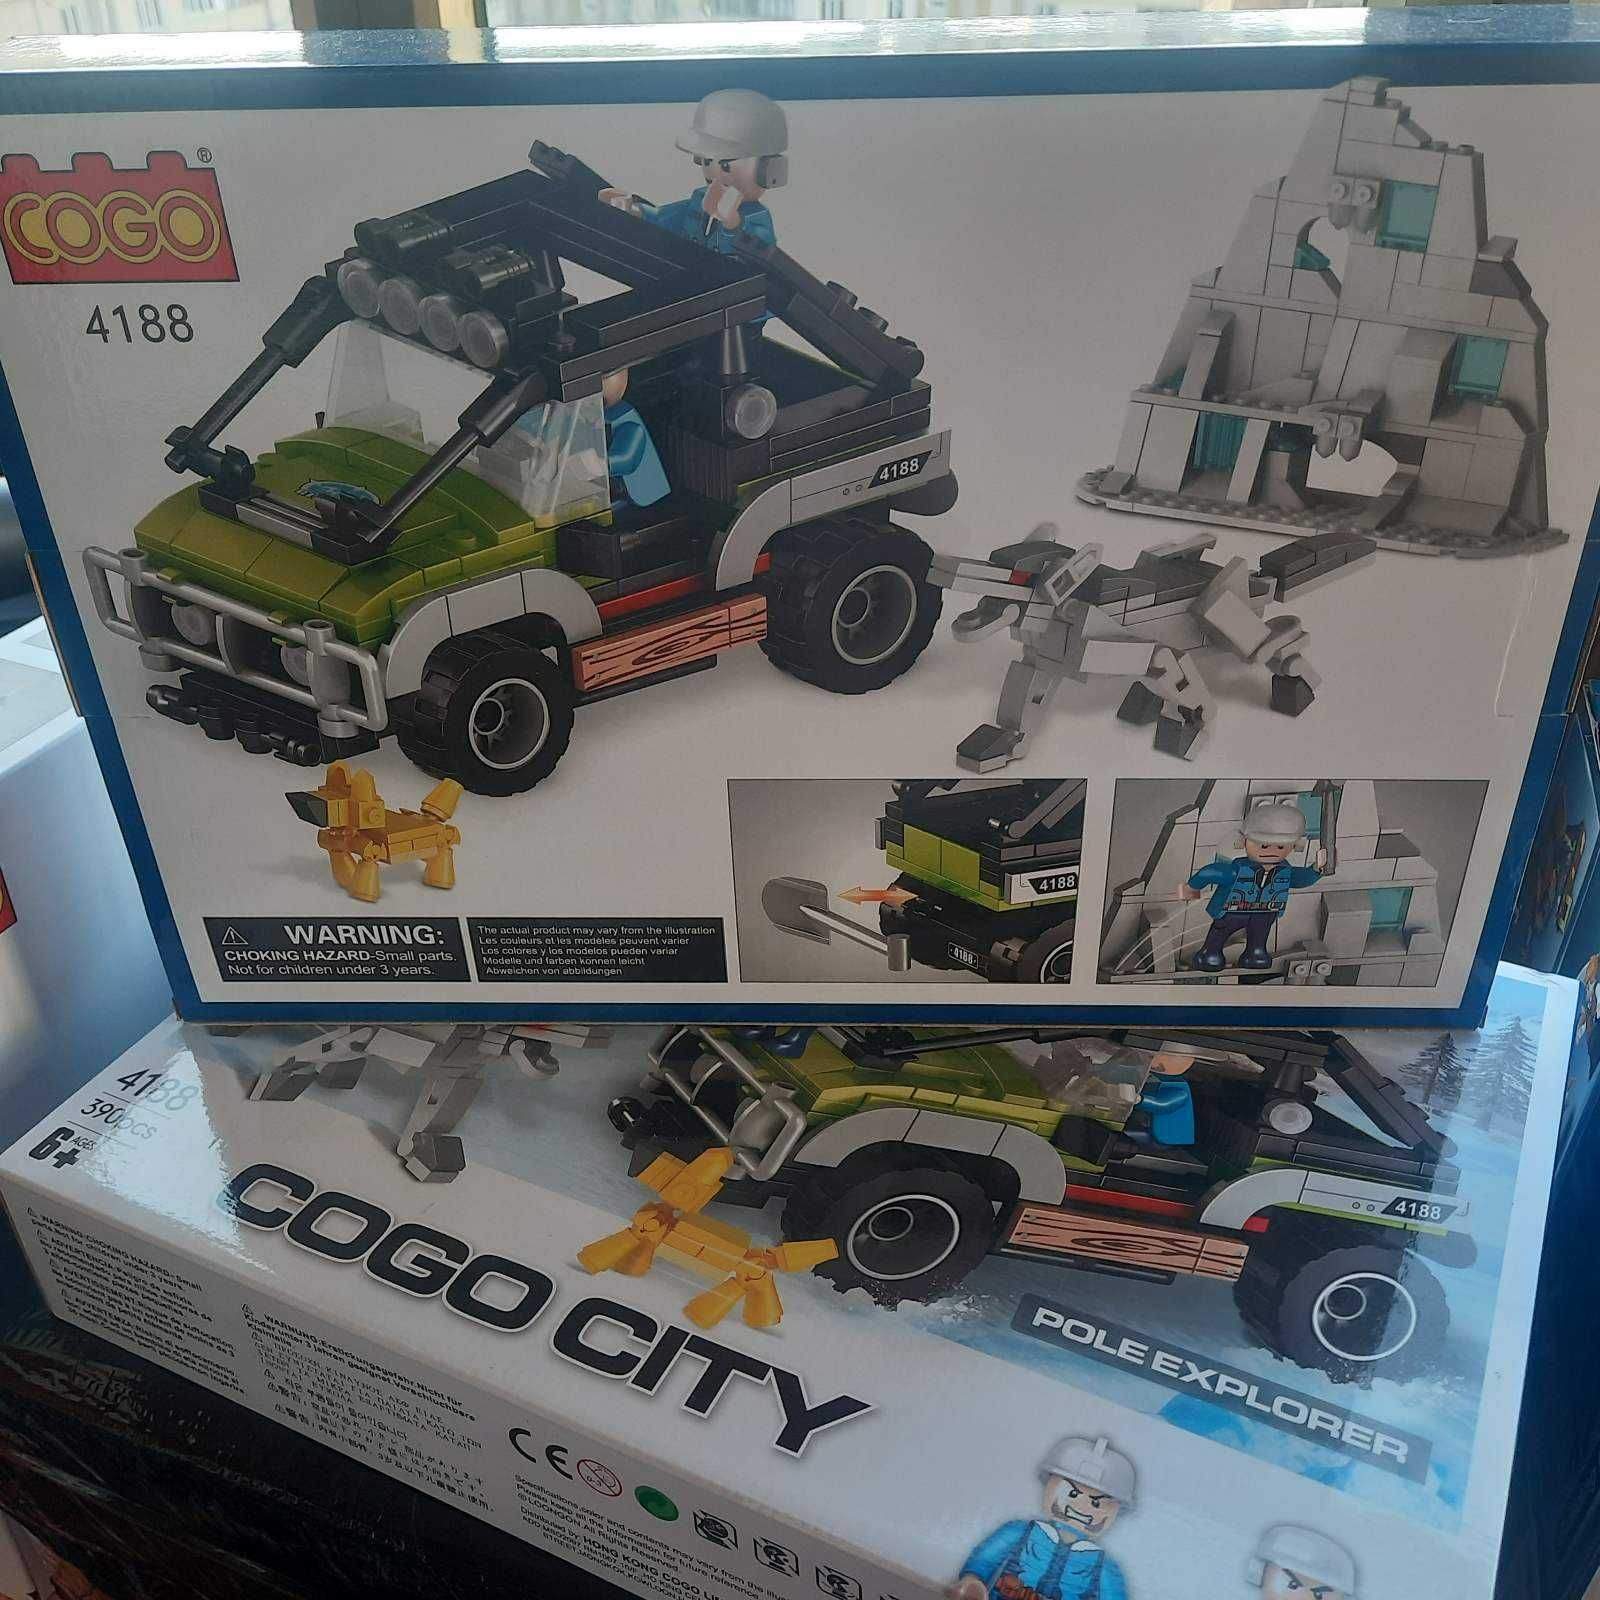 Конструктор Cogo City Внедорожник 4188 совместим Lego City